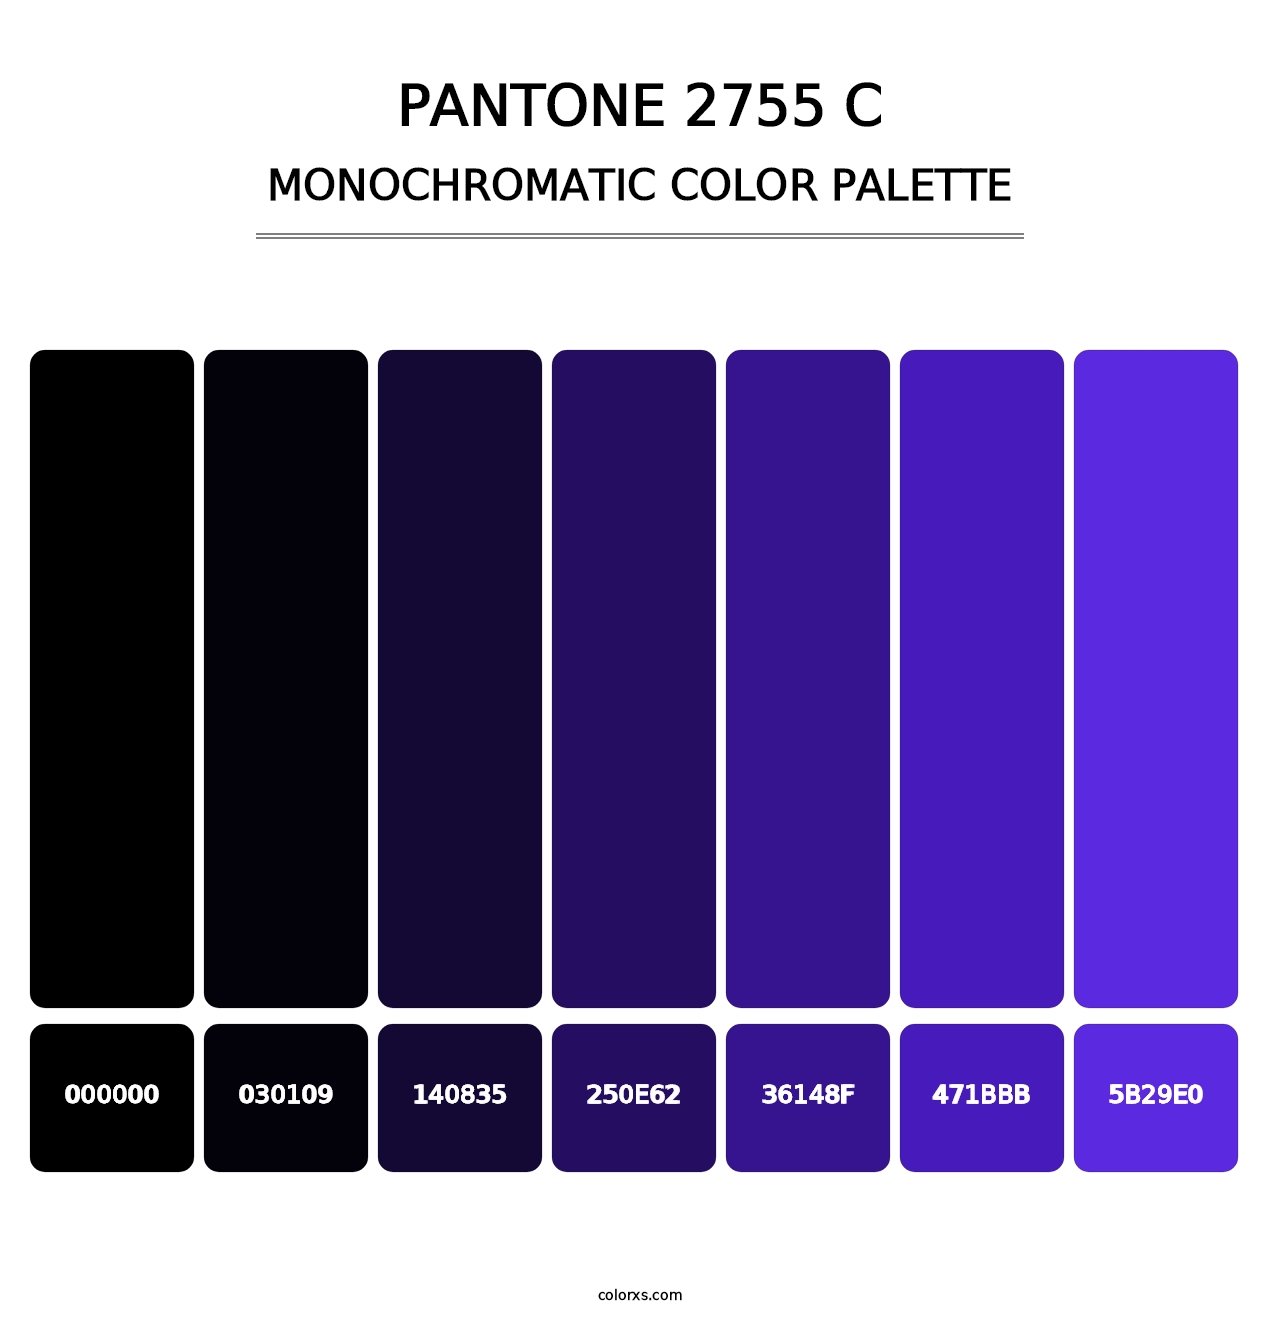 PANTONE 2755 C - Monochromatic Color Palette